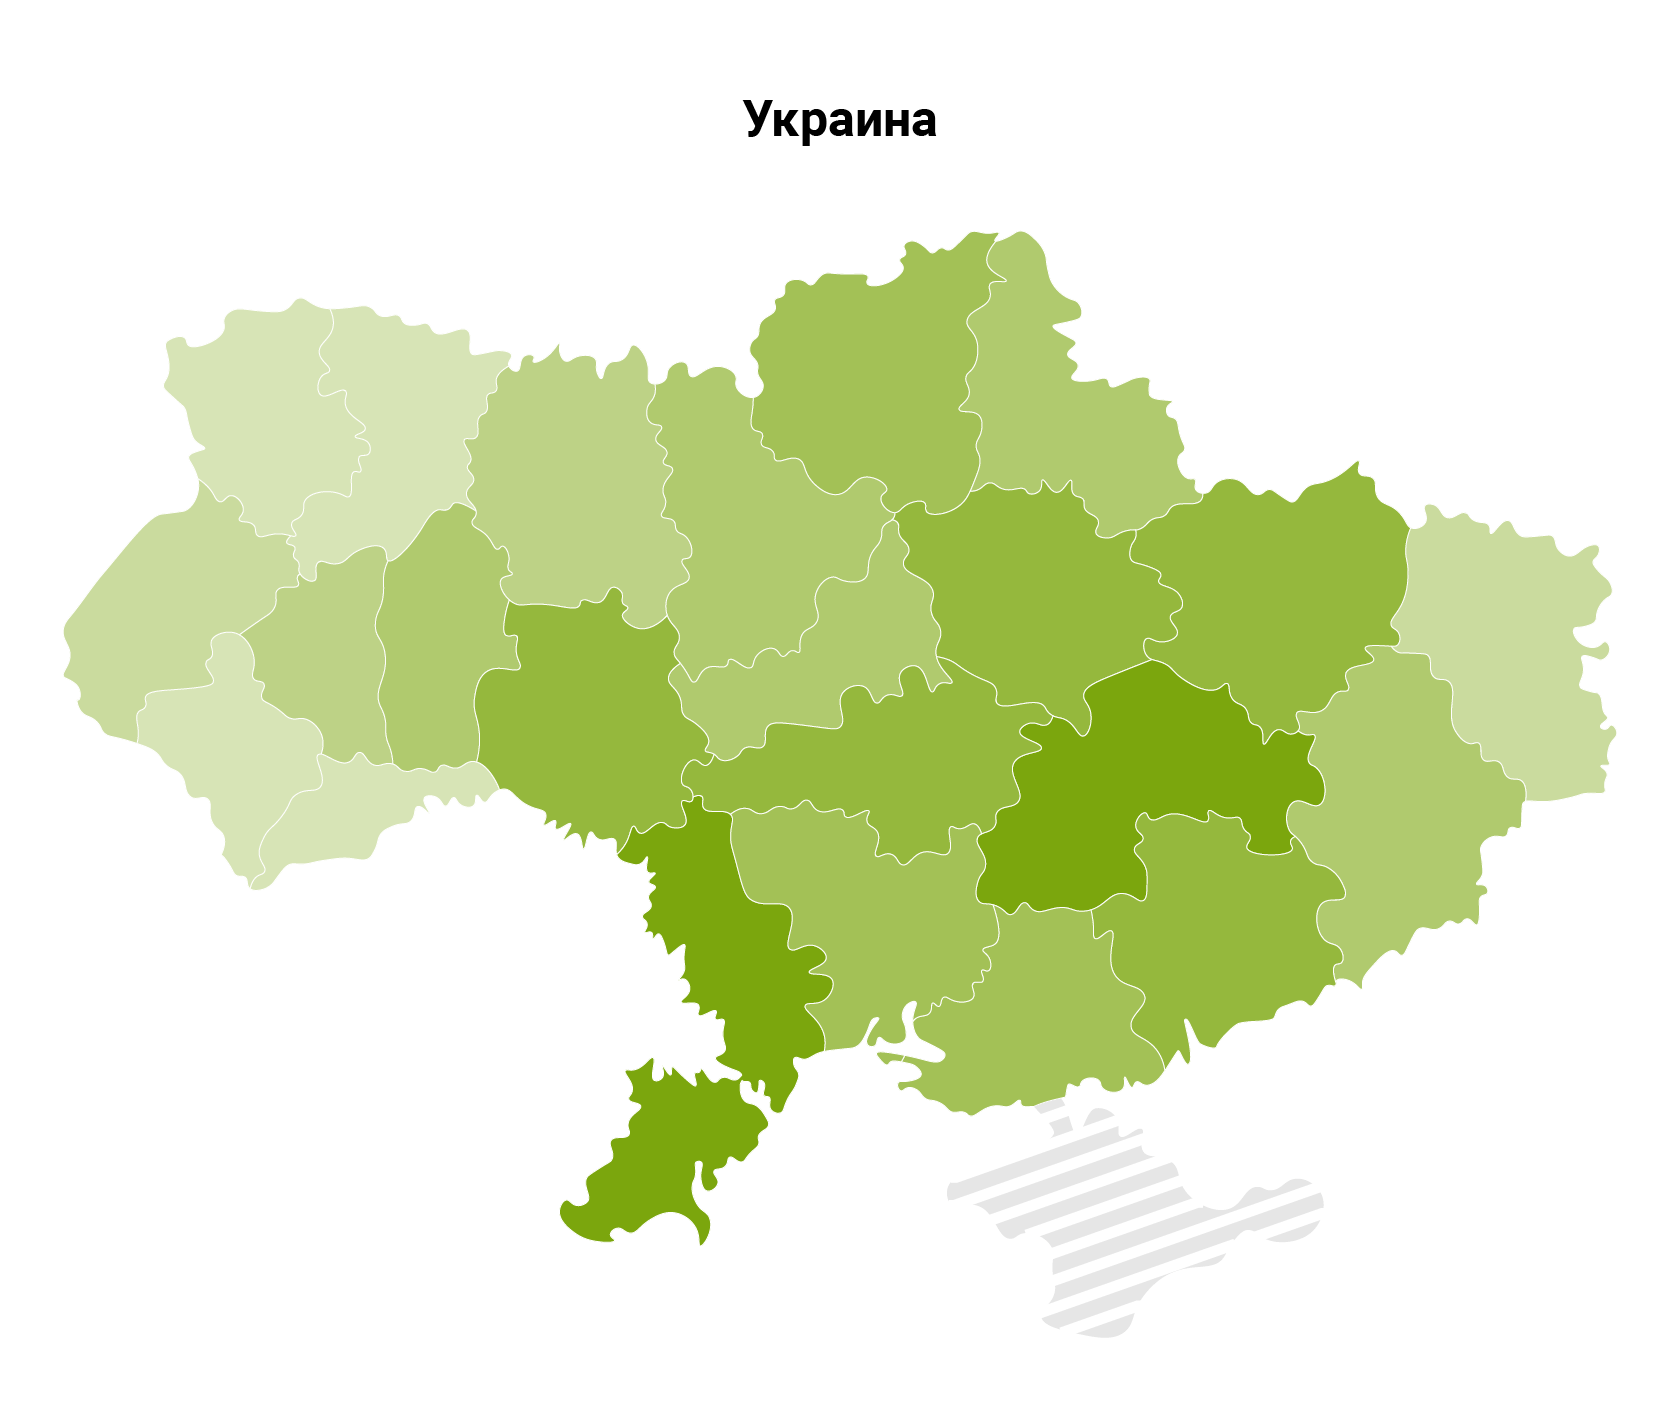 Растениеводство. Основные регионы производства. Украина